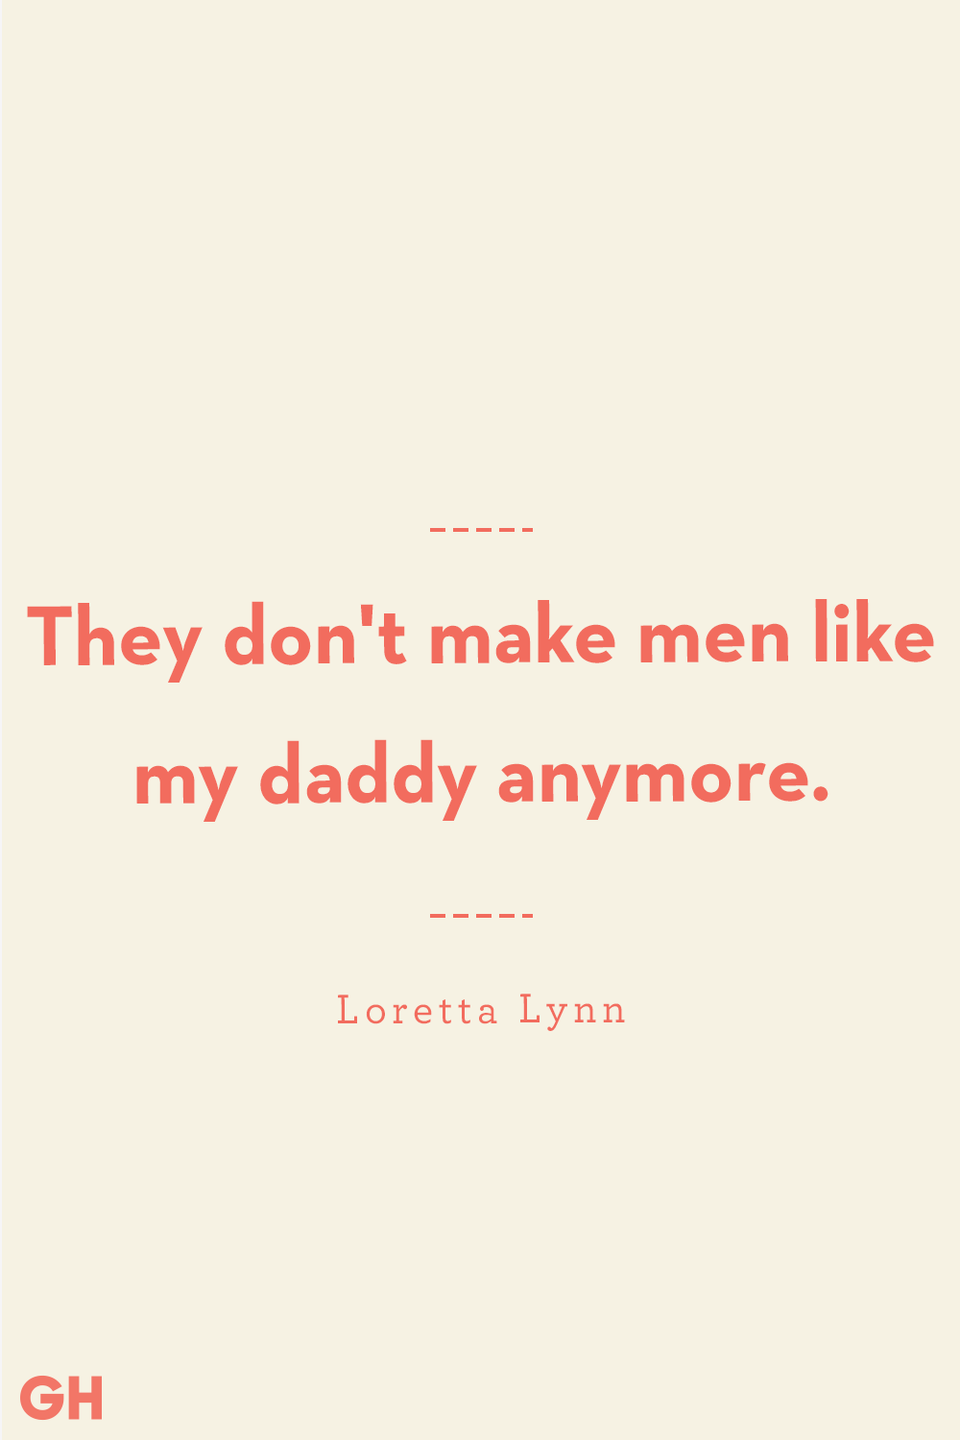 22) Loretta Lynn